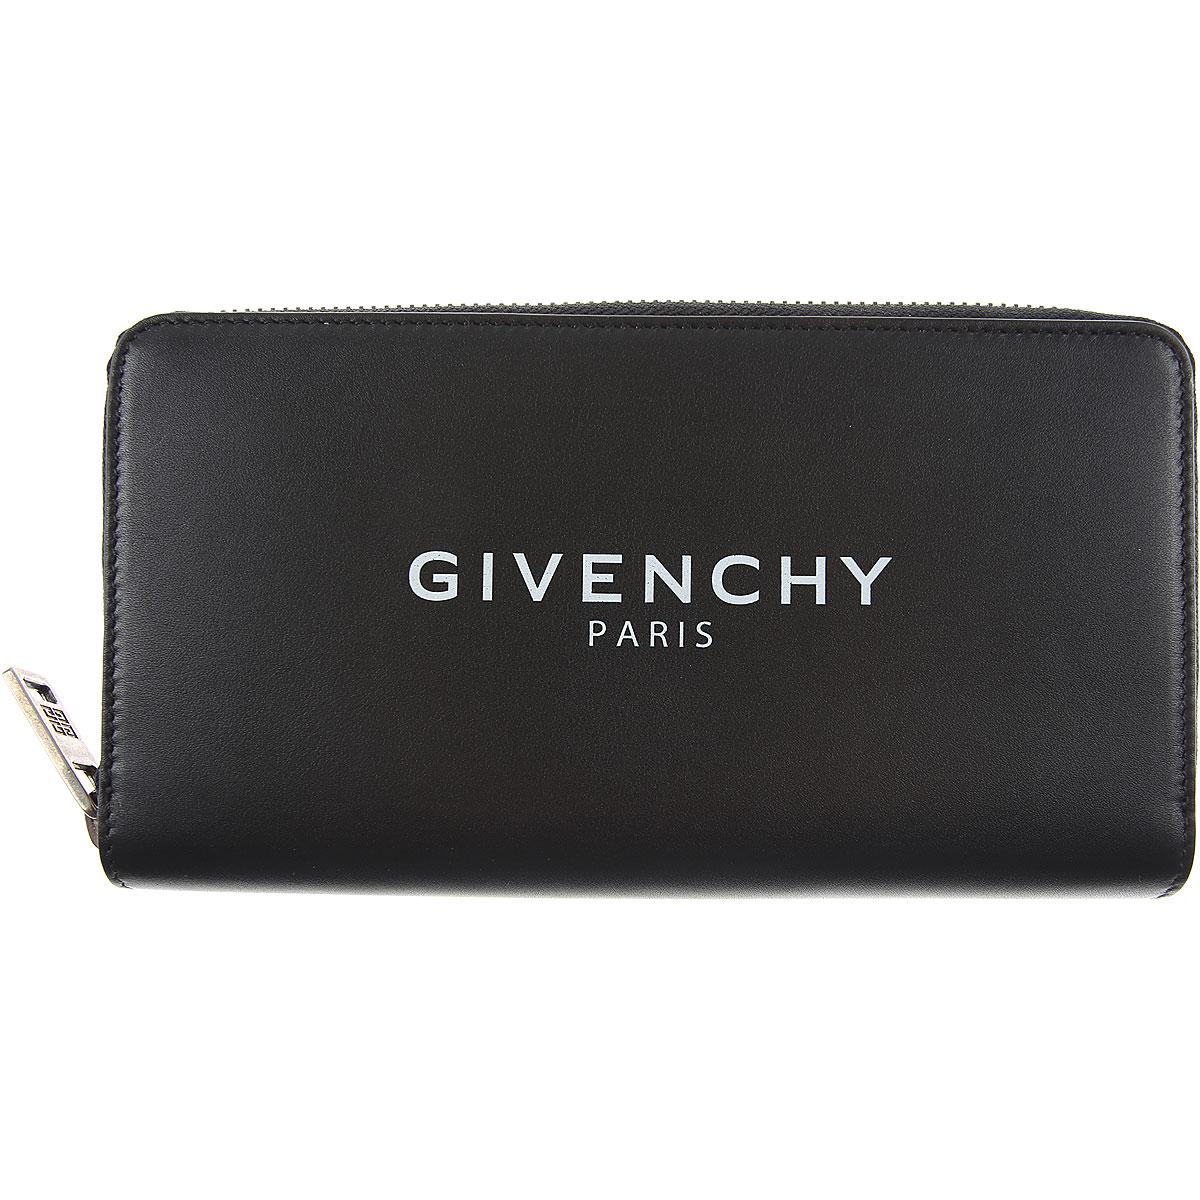 Givenchy Wallet For Men in Black for Men - Save 53% - Lyst